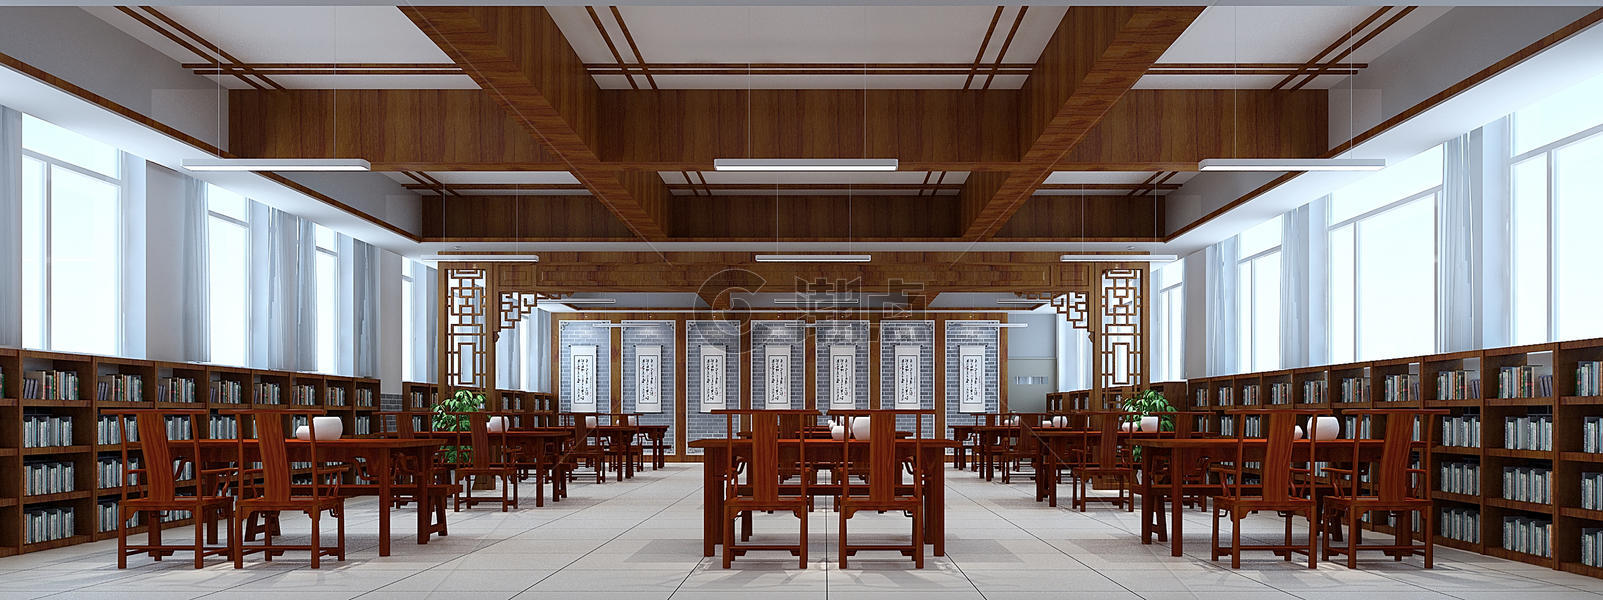 中式风格图书馆室内装修效果图图片素材免费下载